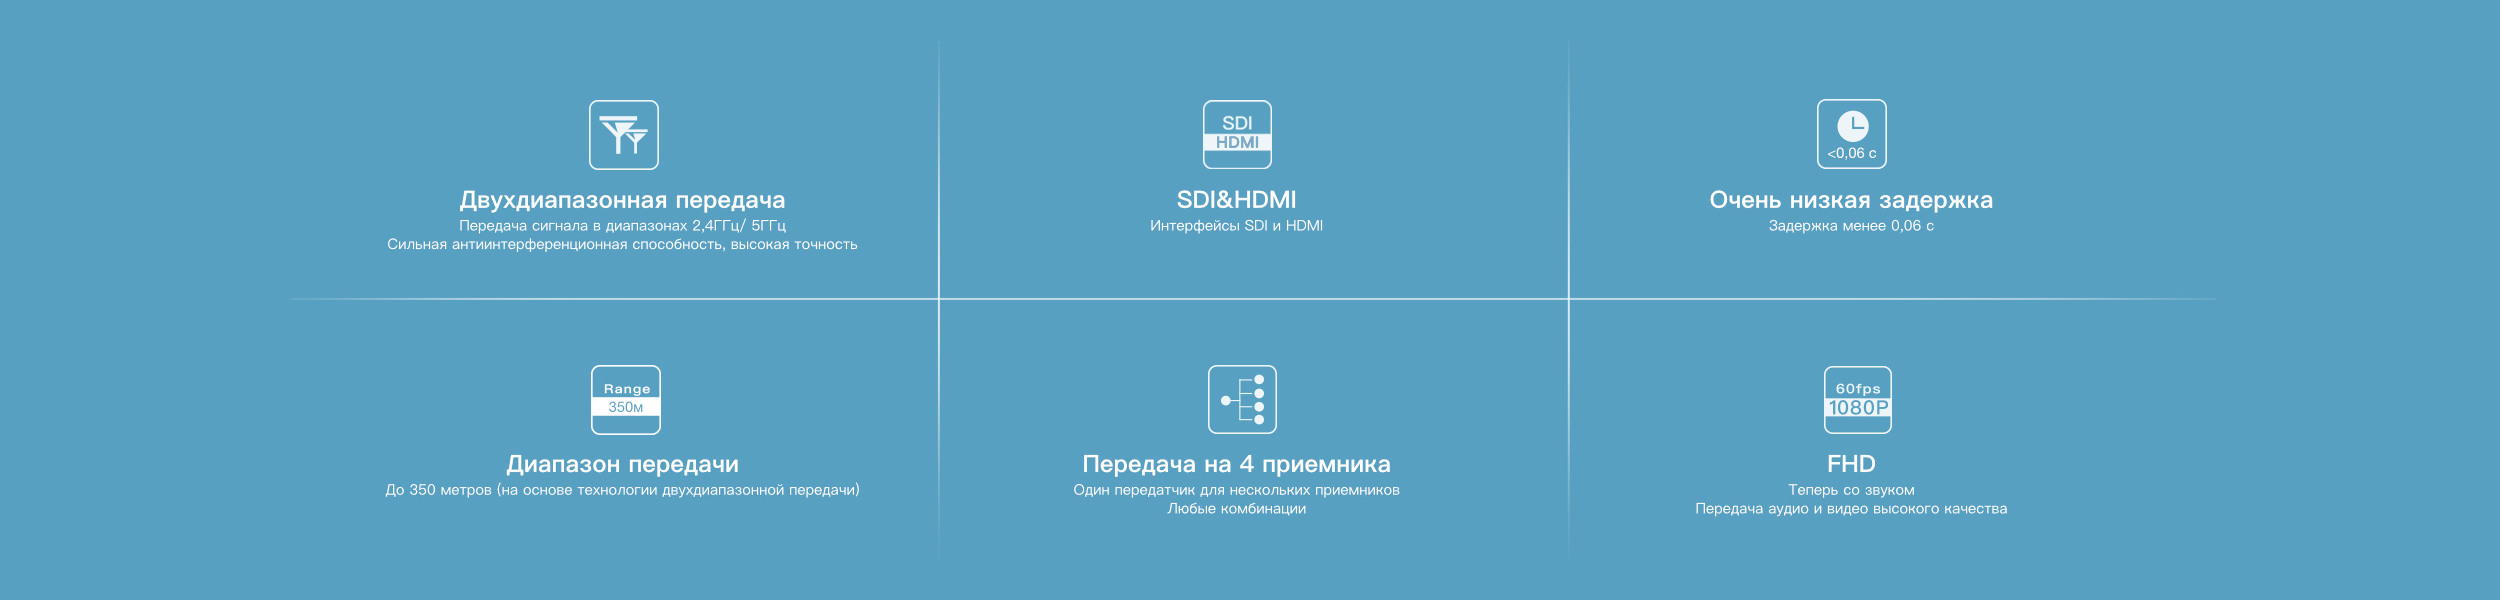 2-icons_ru.jpeg